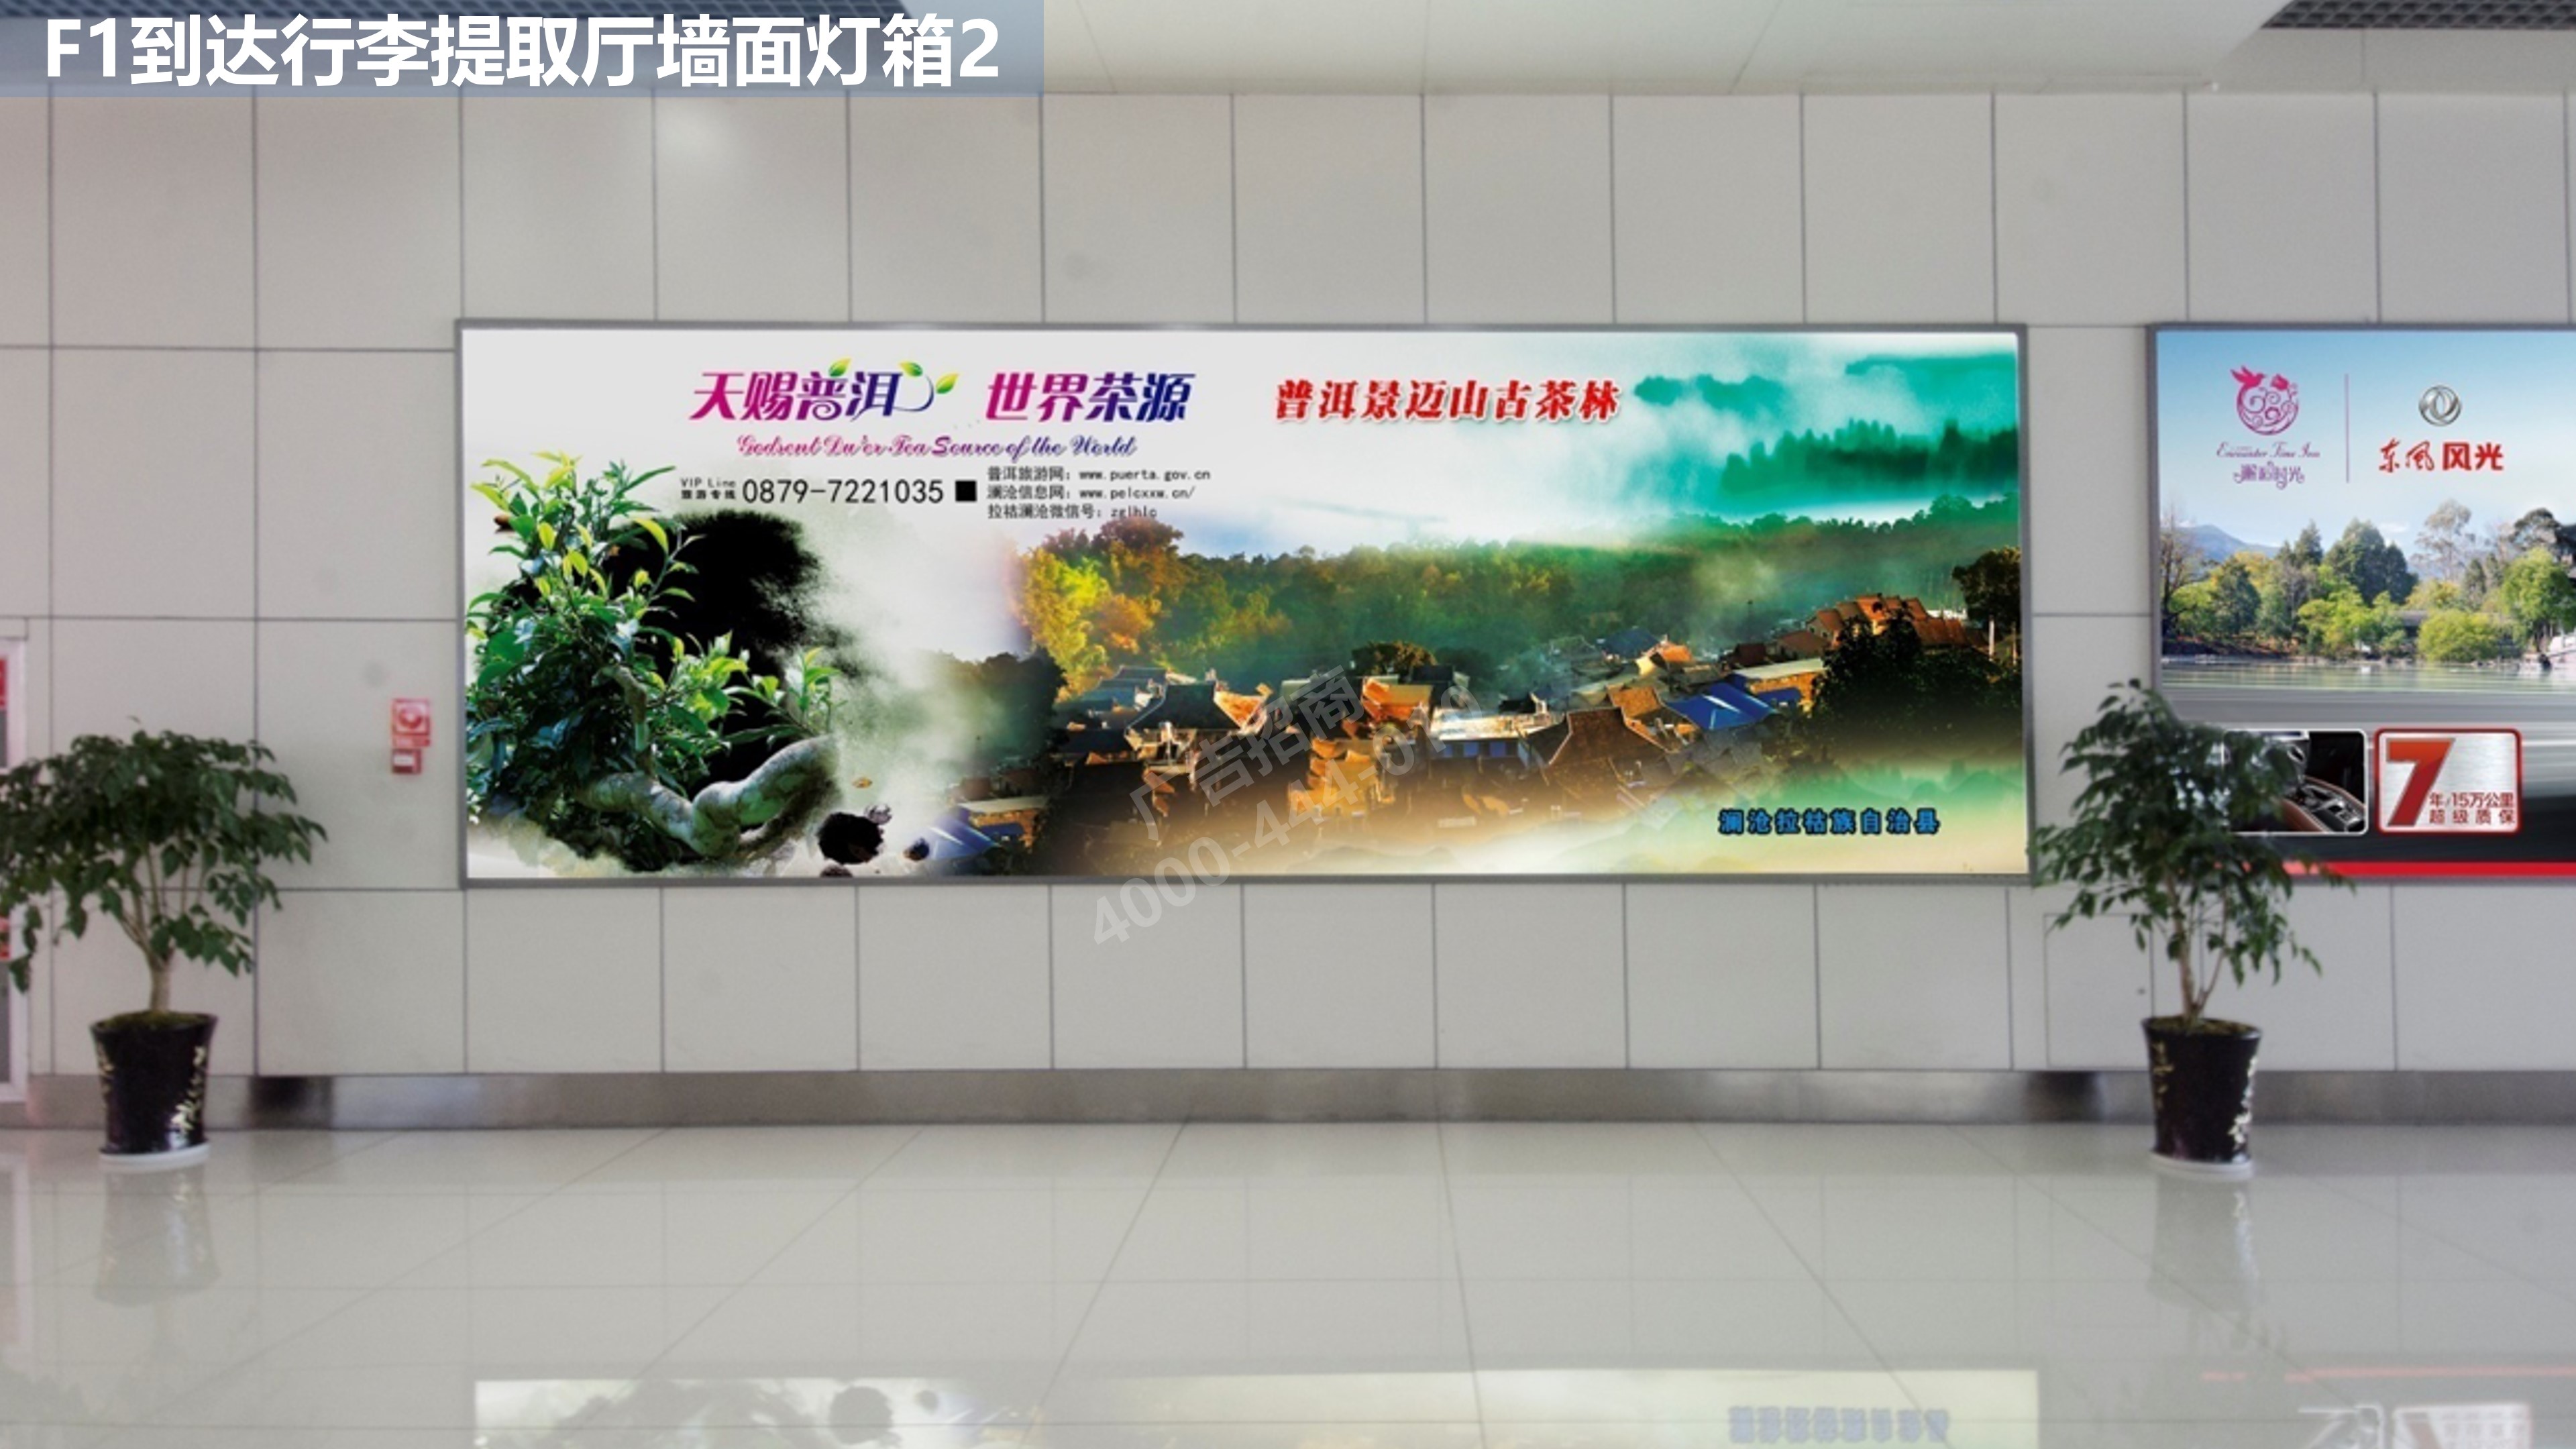 丽江机场行李厅广告2